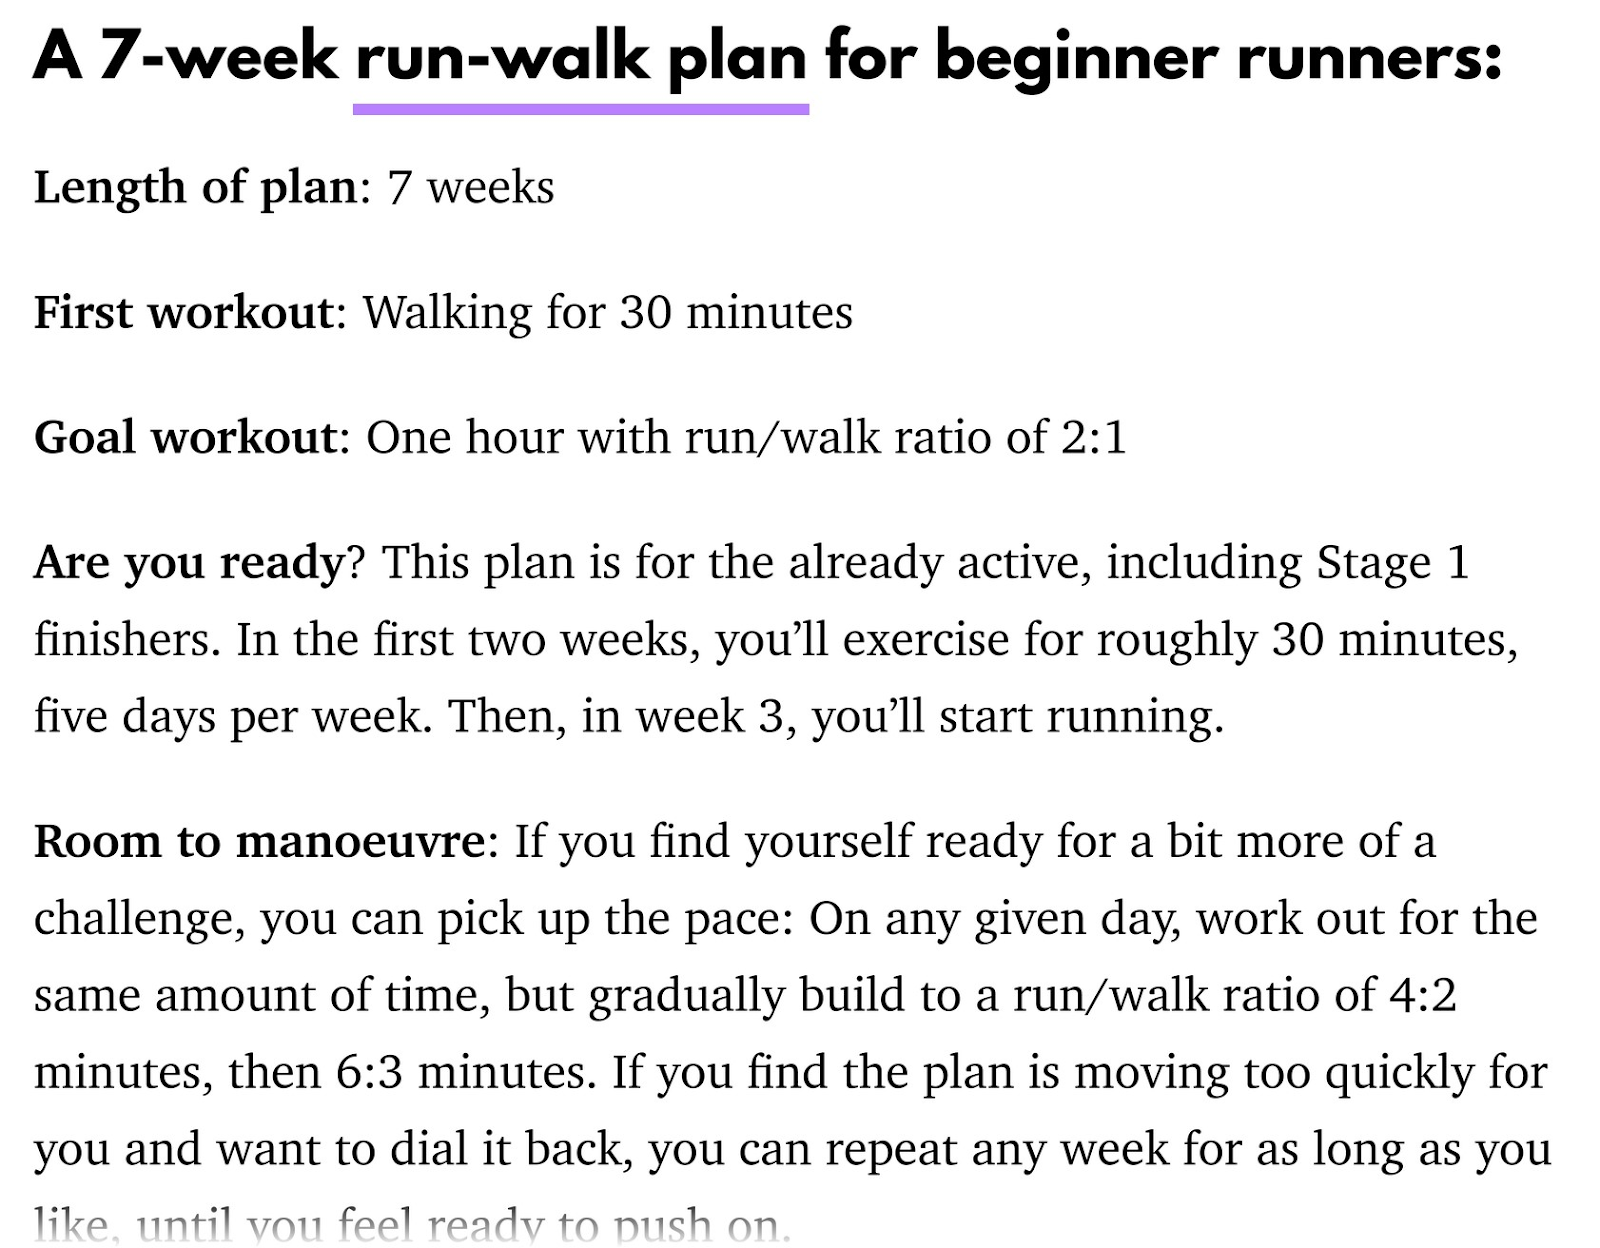 An example of a 7-week run-walk plan for beginners